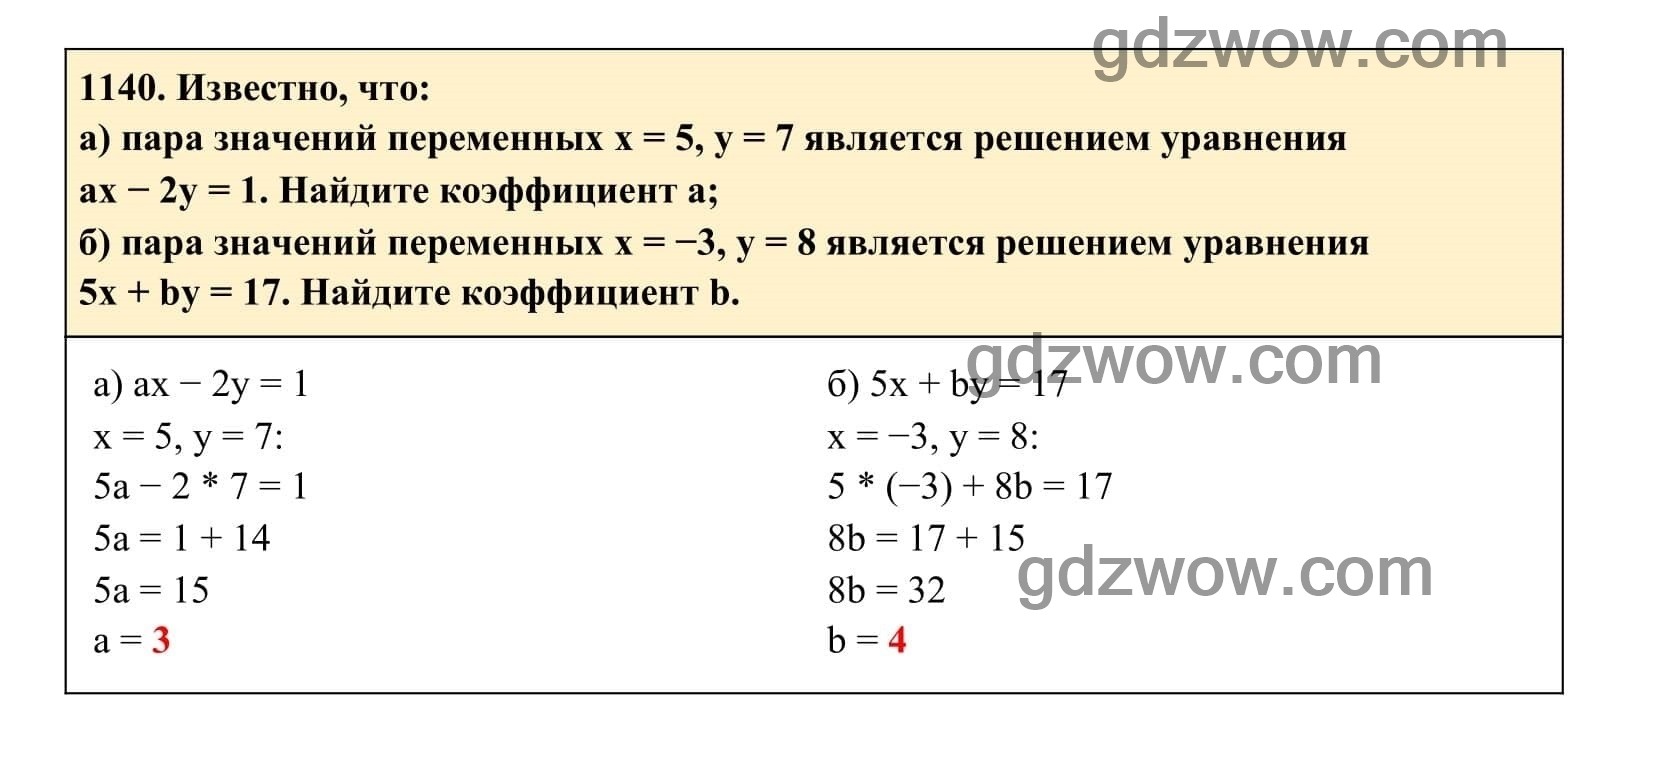 Упражнение 1140 - ГДЗ по Алгебре 7 класс Учебник Макарычев (решебник) - GDZwow